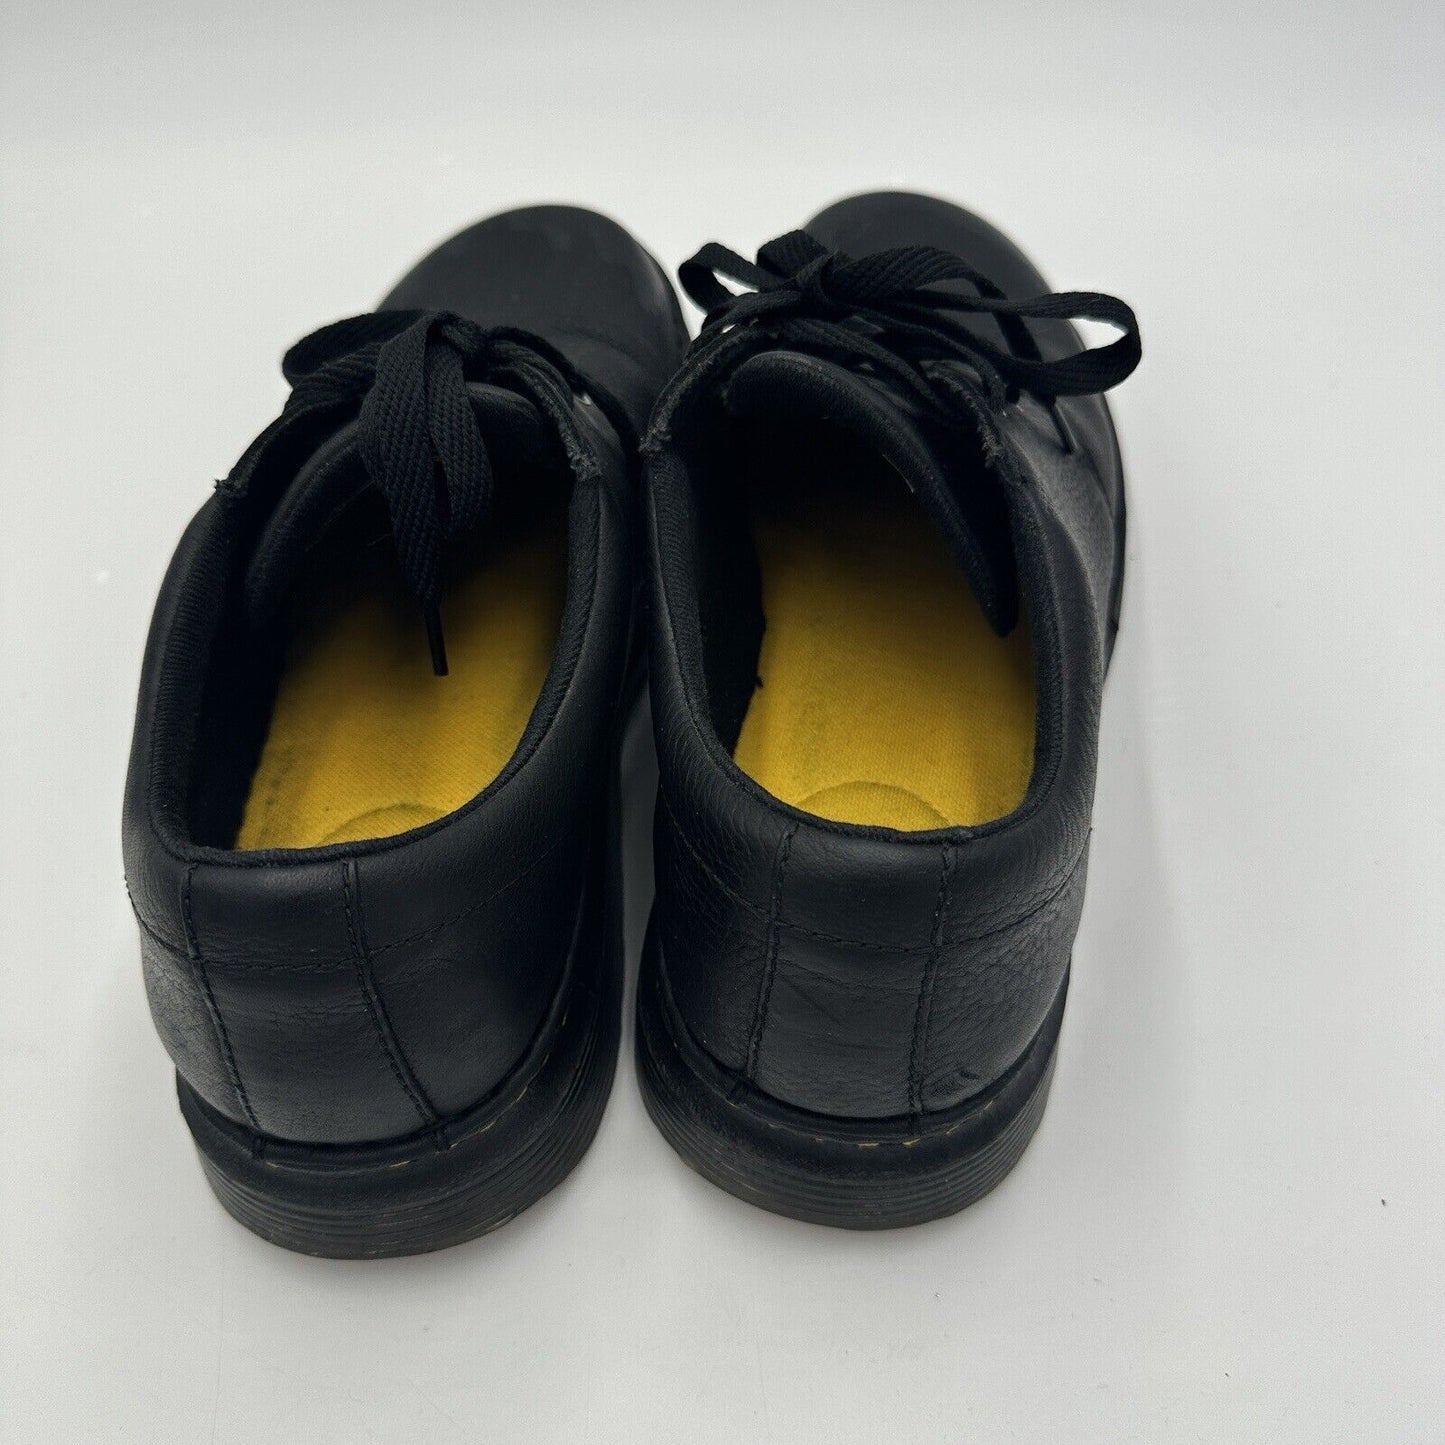 Dr. Martens Hazeldon Grizzly Black Men's Leather Shoes Size 12 US 46 EU